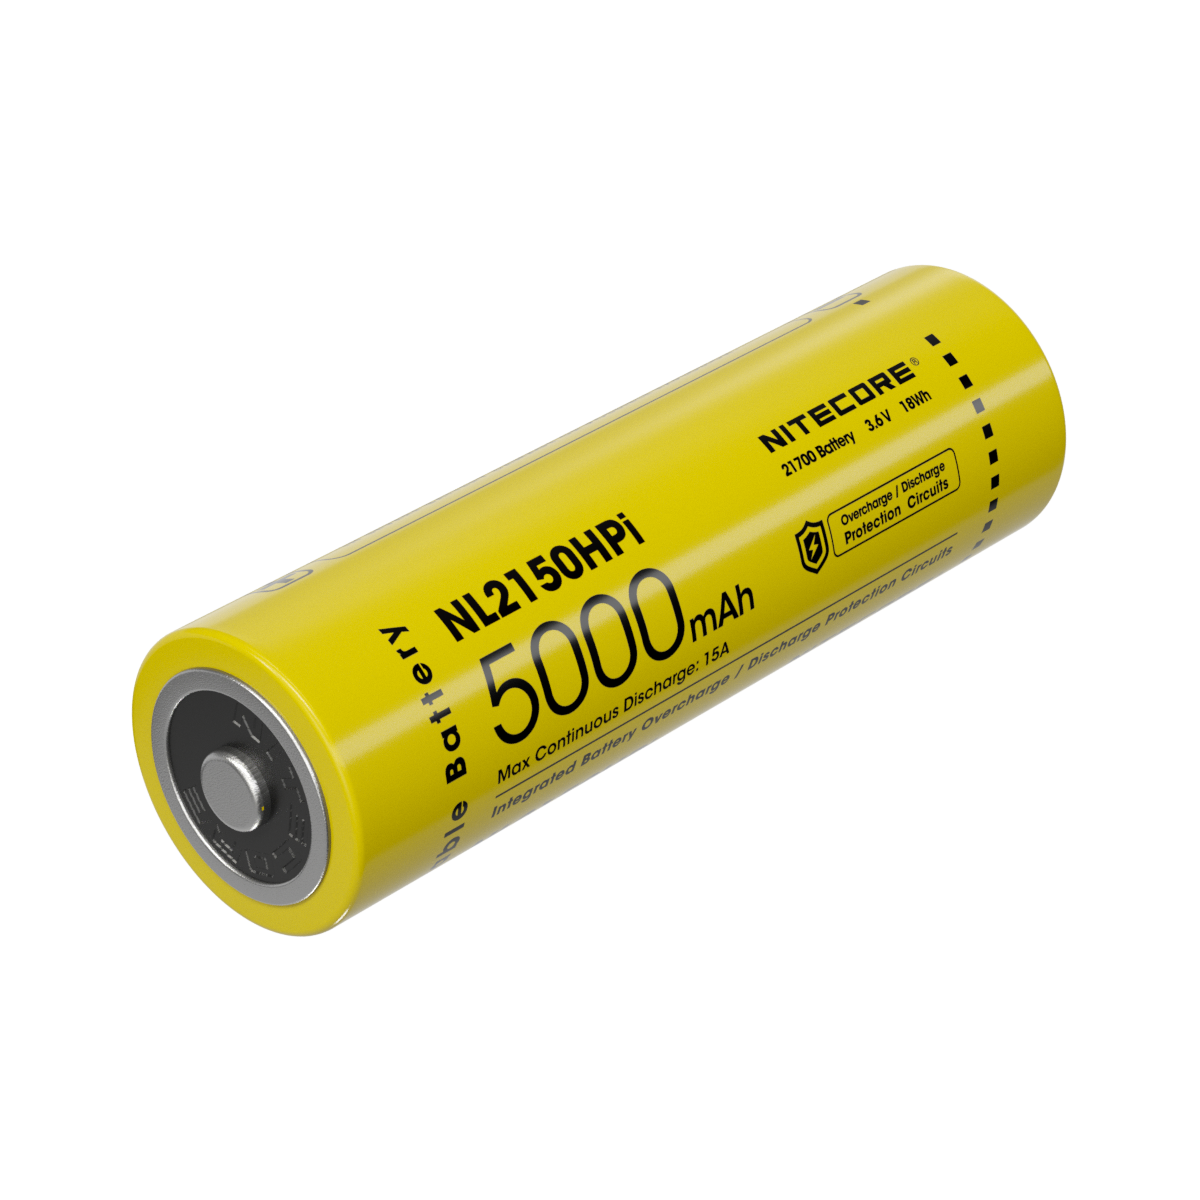 奈特科尔电池 NL2150HPi 5000mAh 可充电 21700 电池